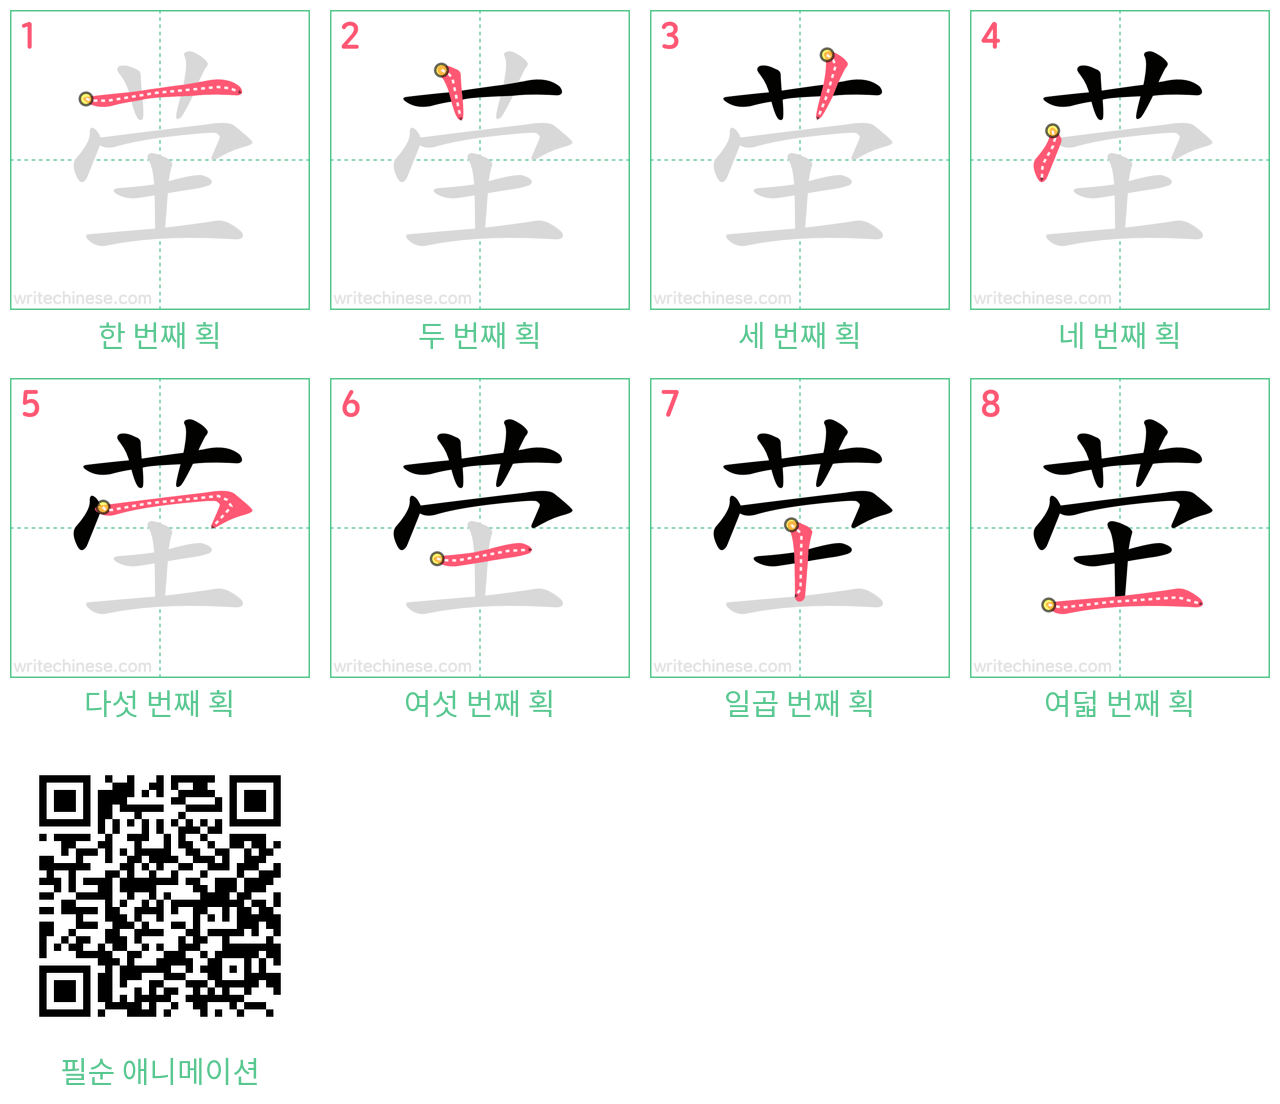 茔 step-by-step stroke order diagrams